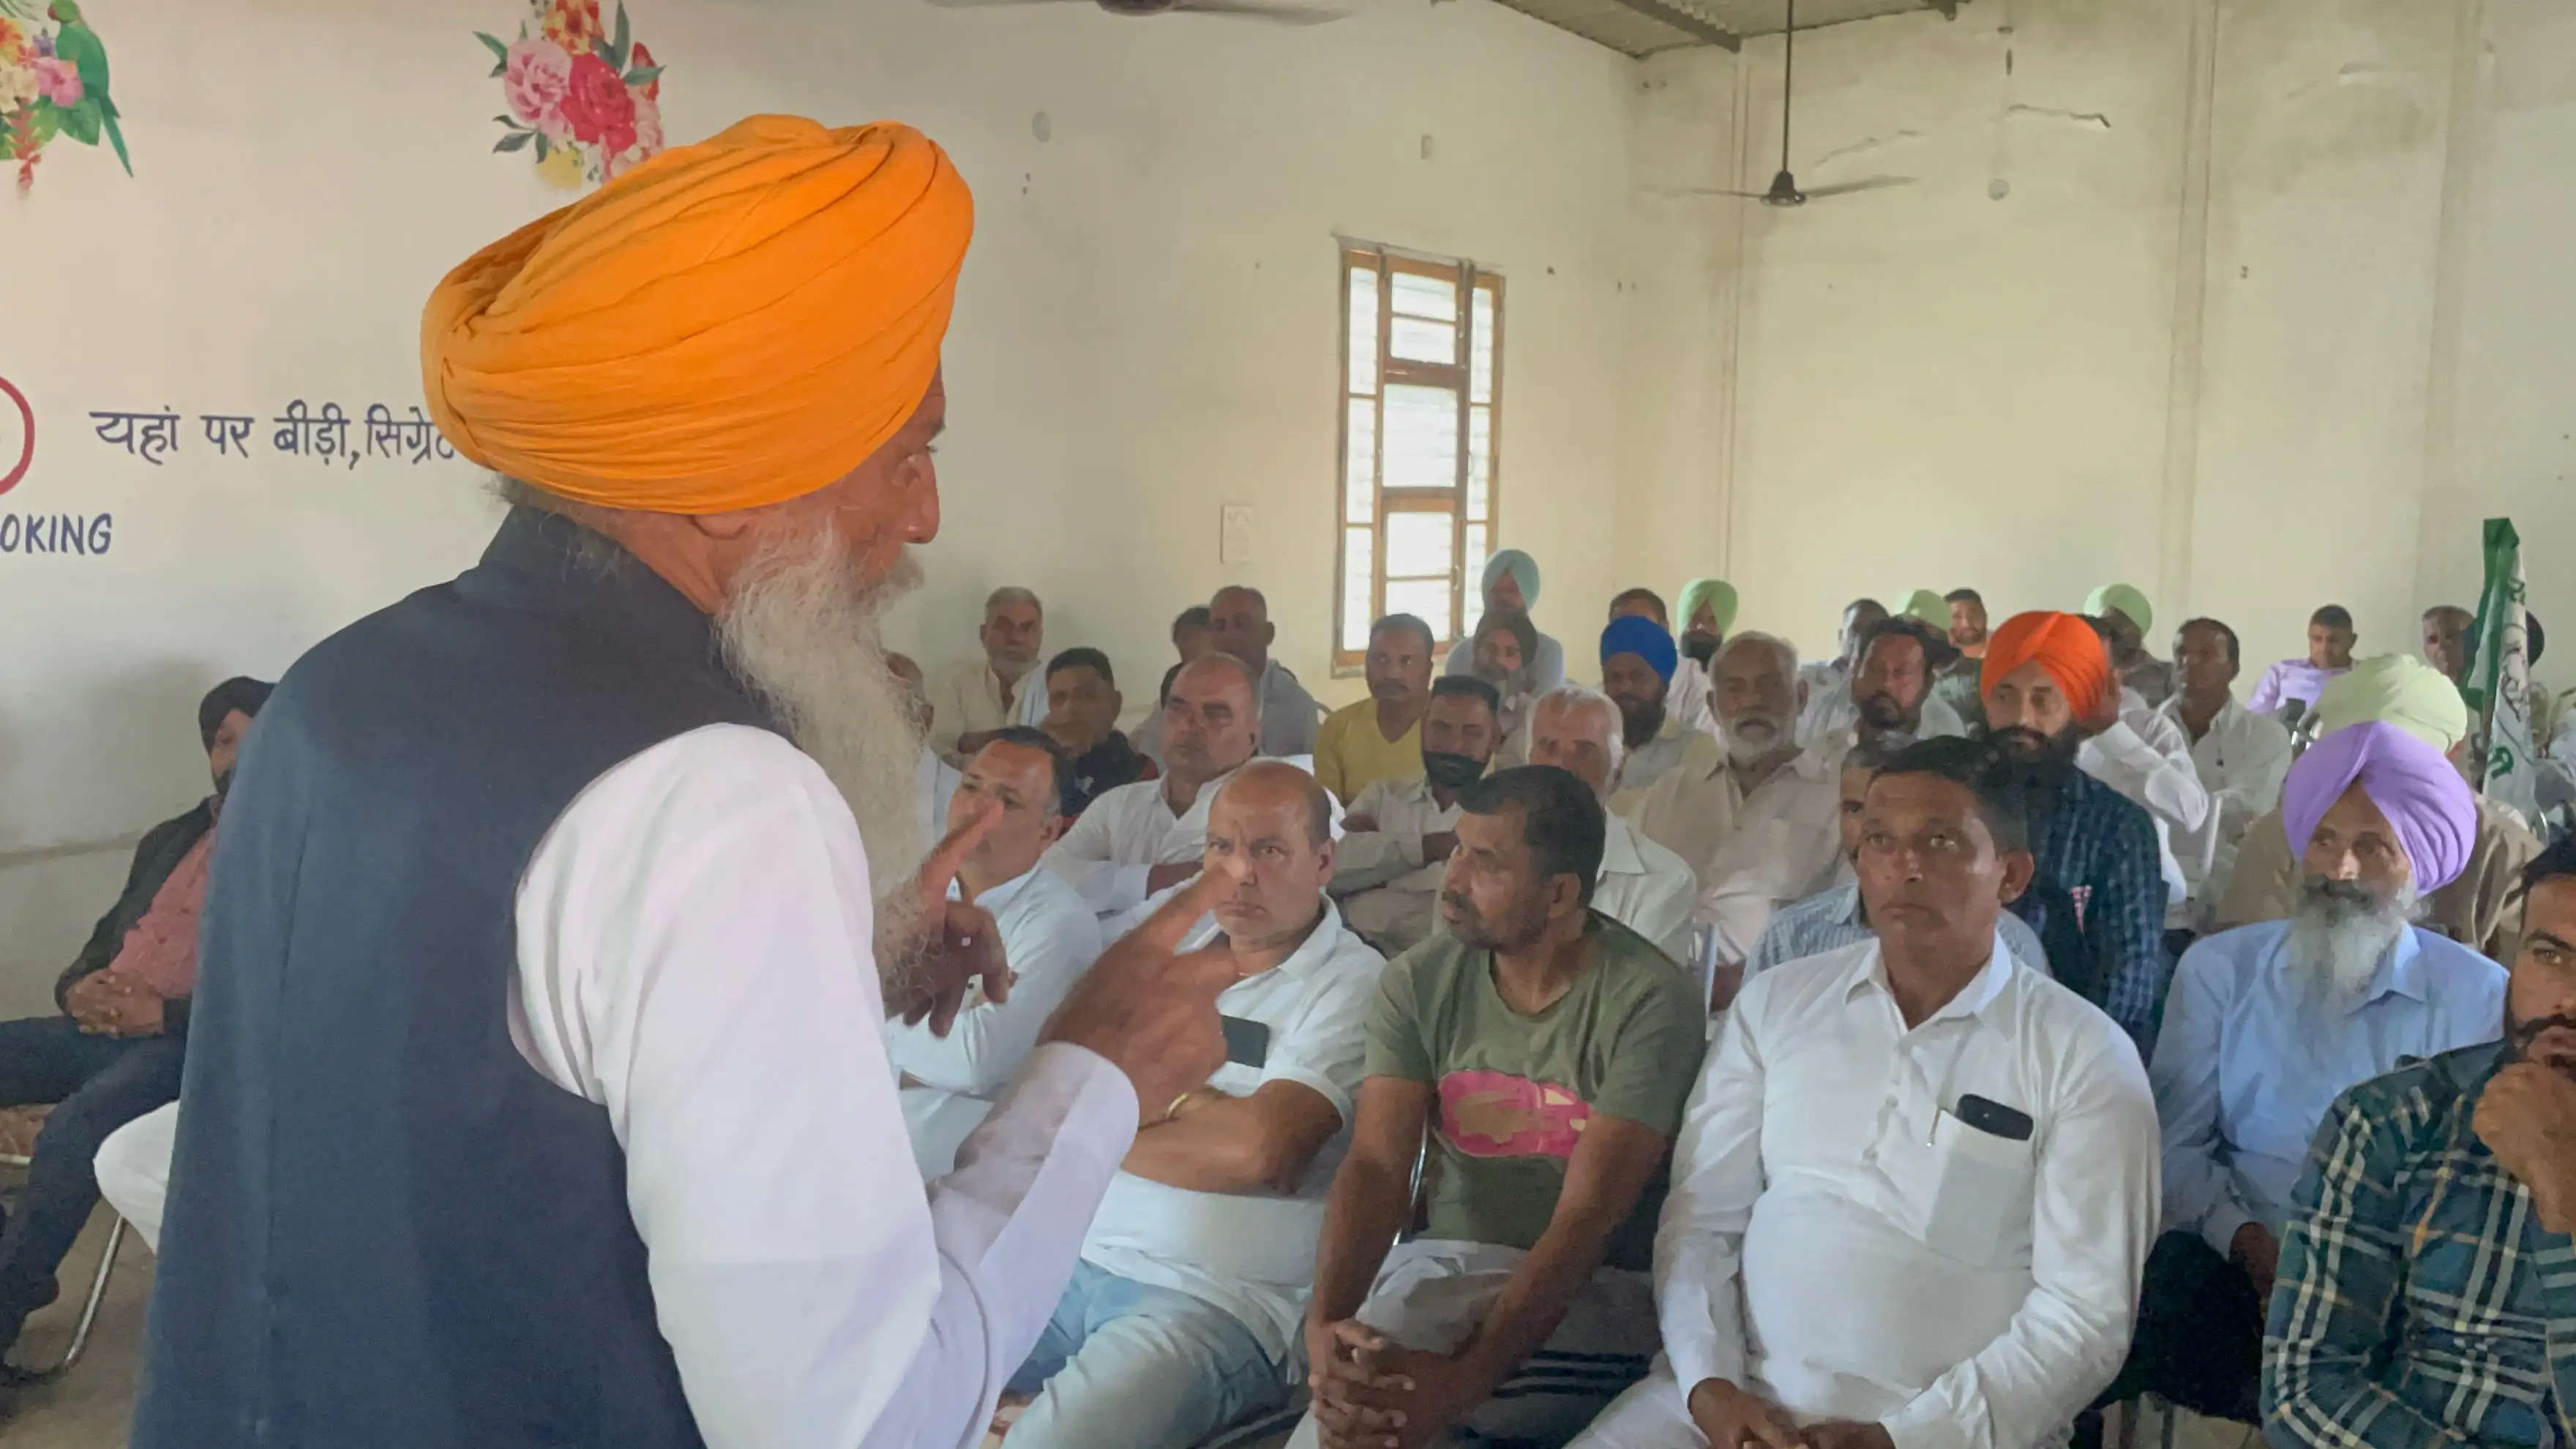  यमुनानगर: सरकार पूंजीपतियों का कर्ज माफ करती है, गरीब किसानों का नहीं: गुरनाम सिंह चढ़ूनी